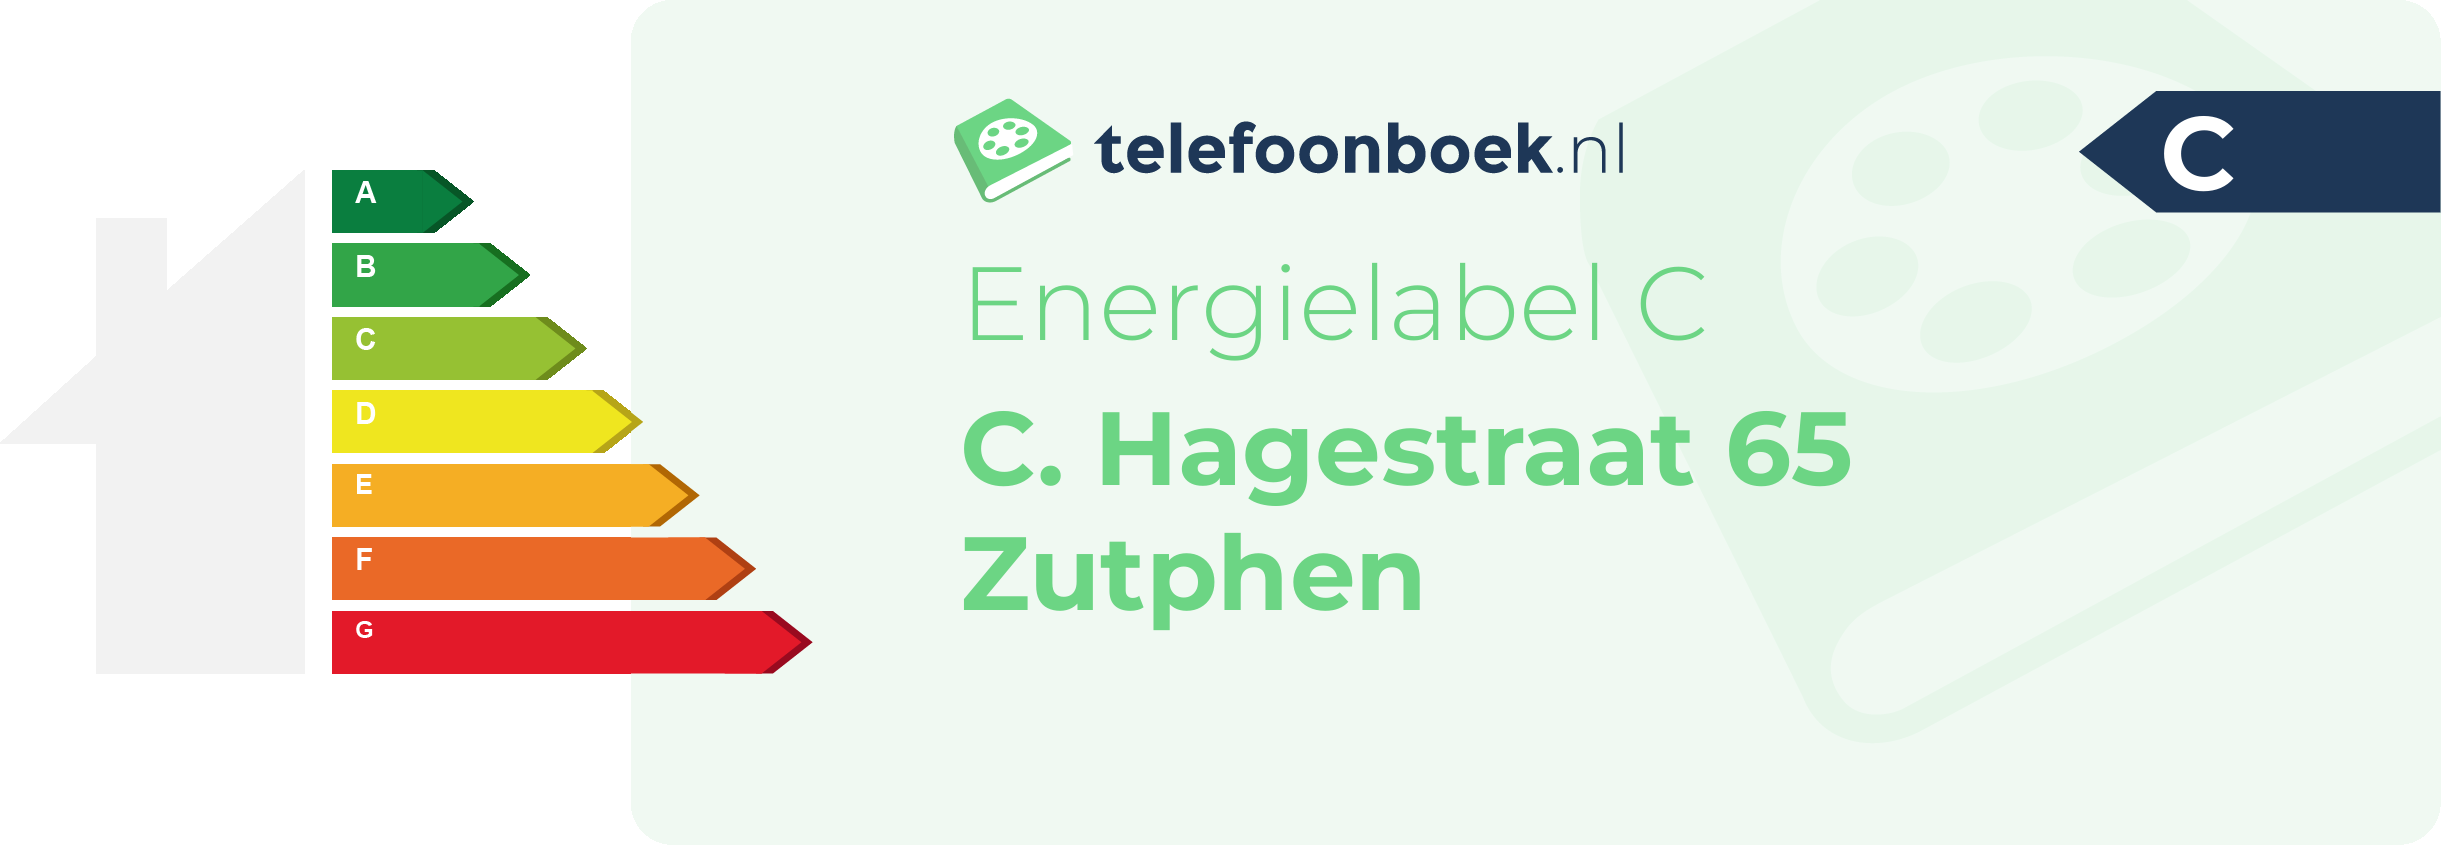 Energielabel C. Hagestraat 65 Zutphen